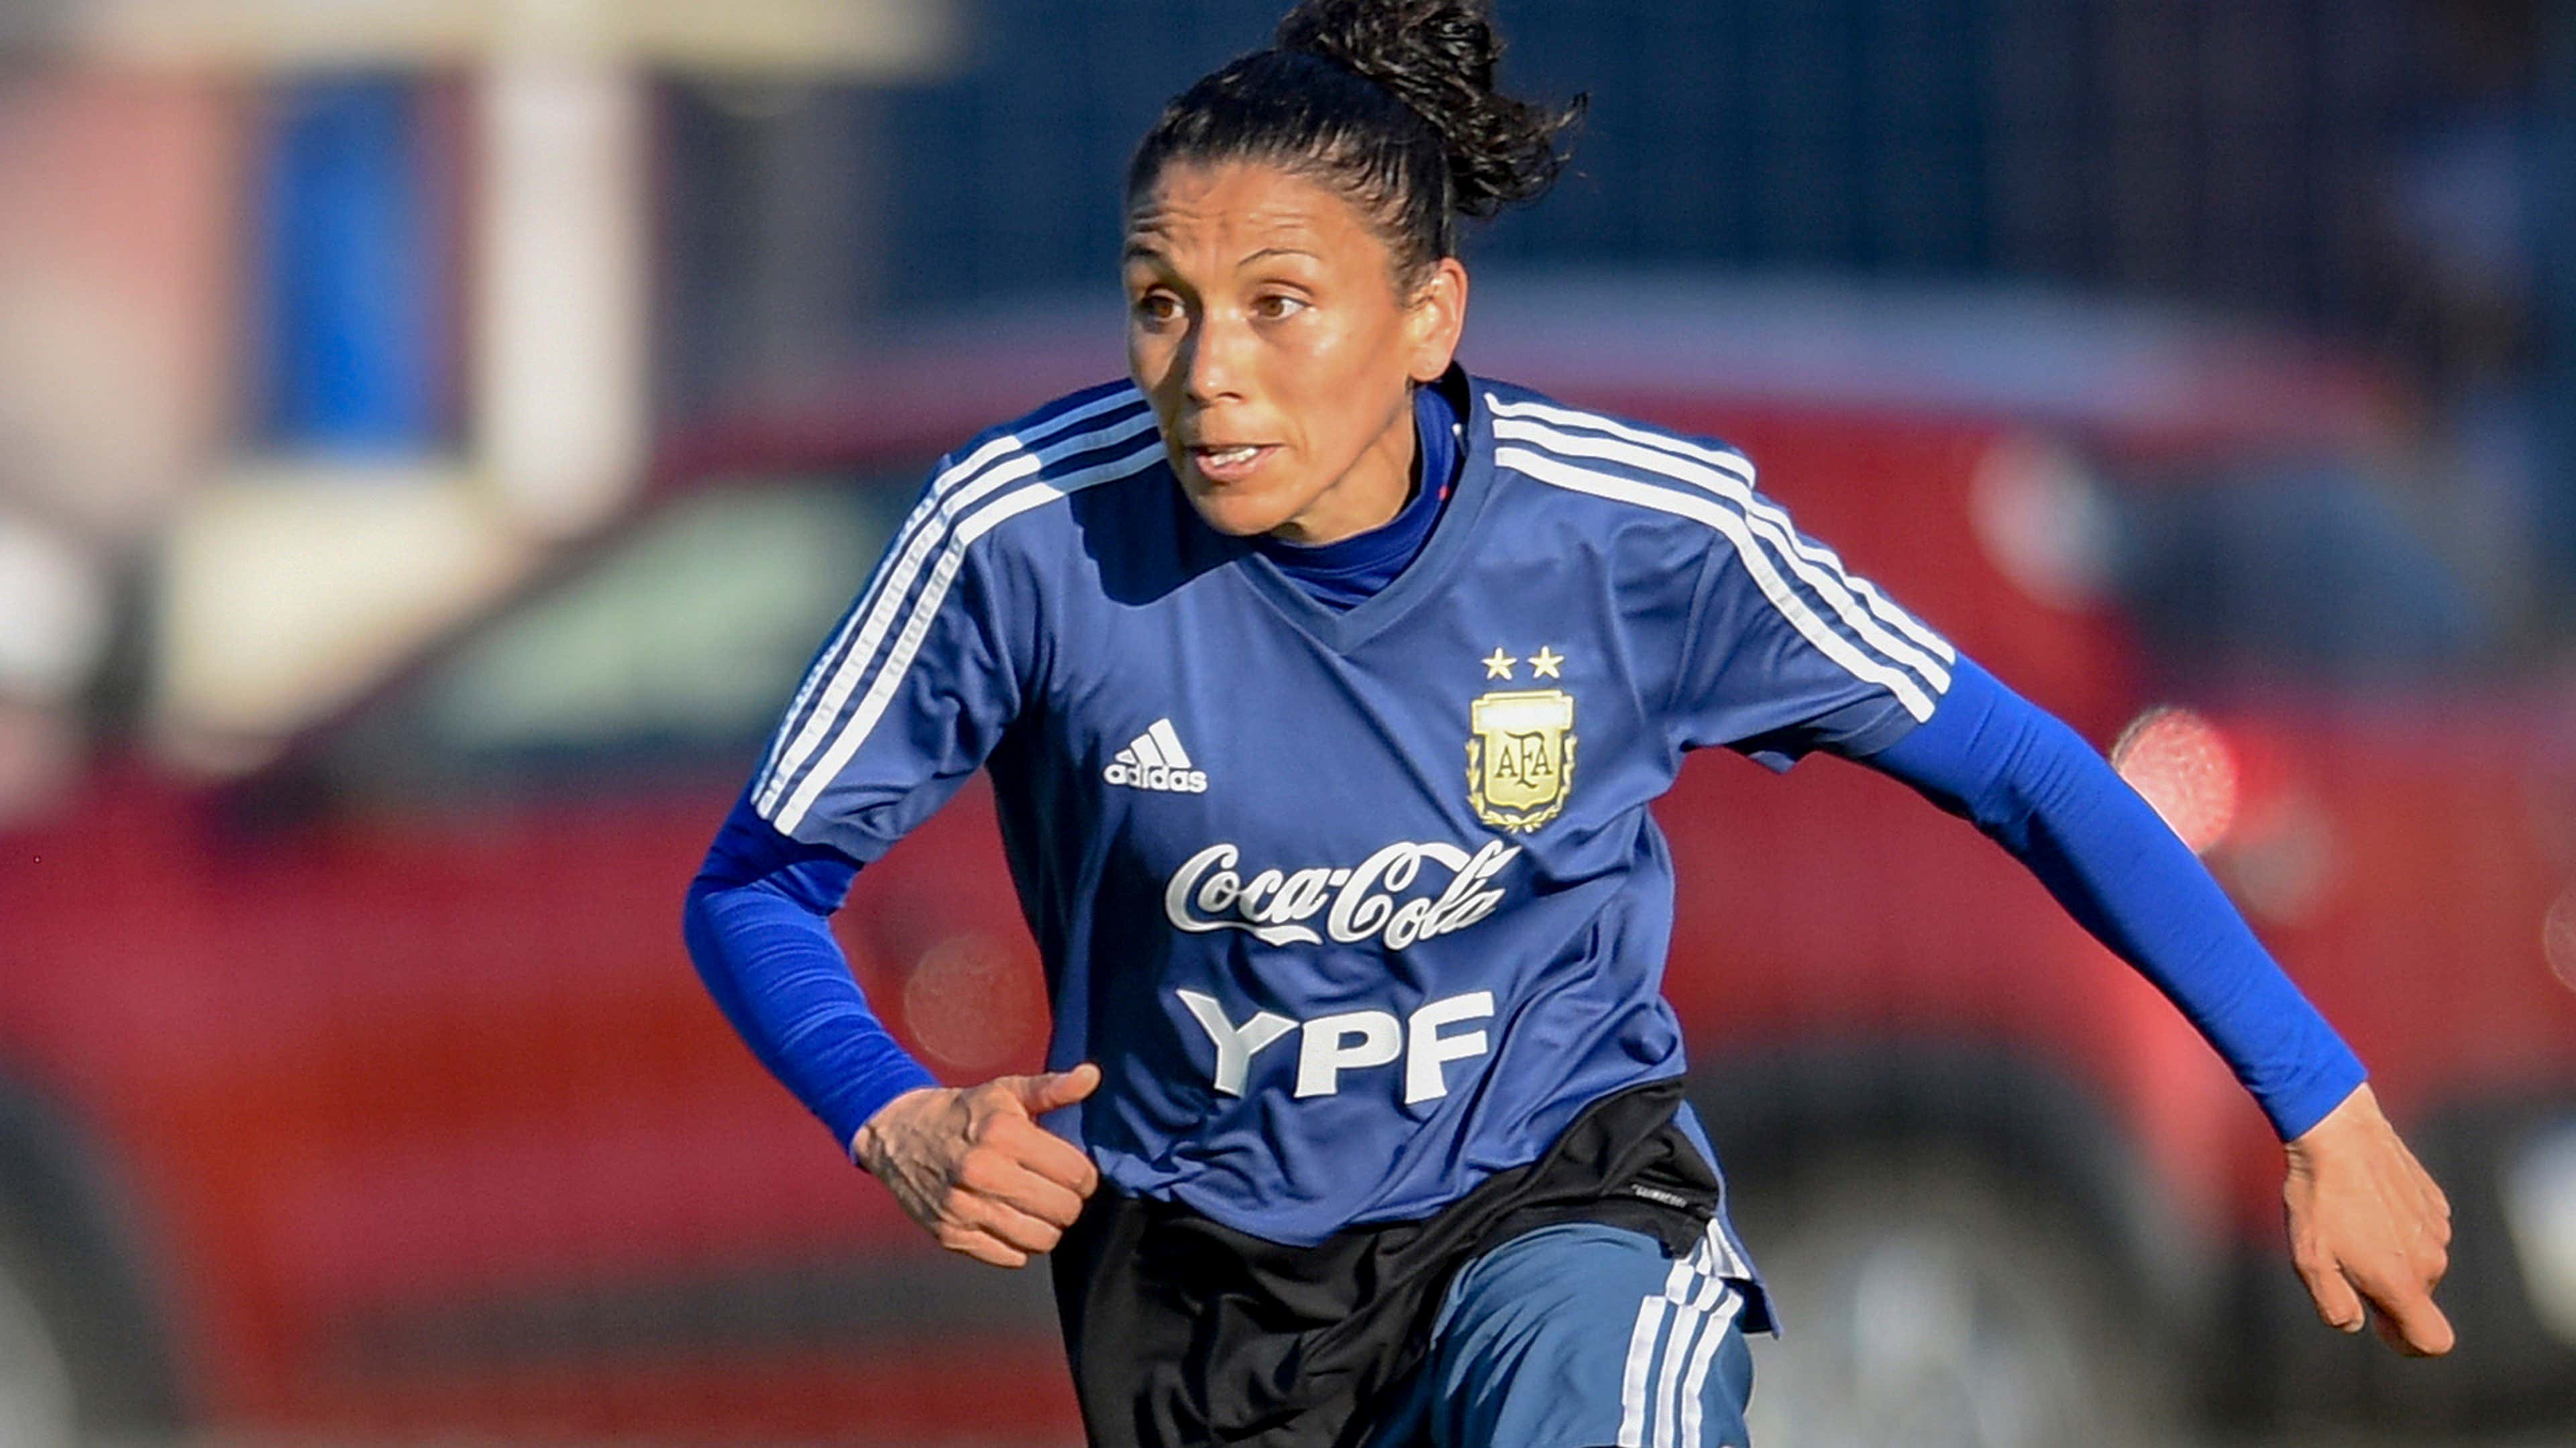 Mariela Coronel: testemunha da transformação argentina volta à Copa aos 38